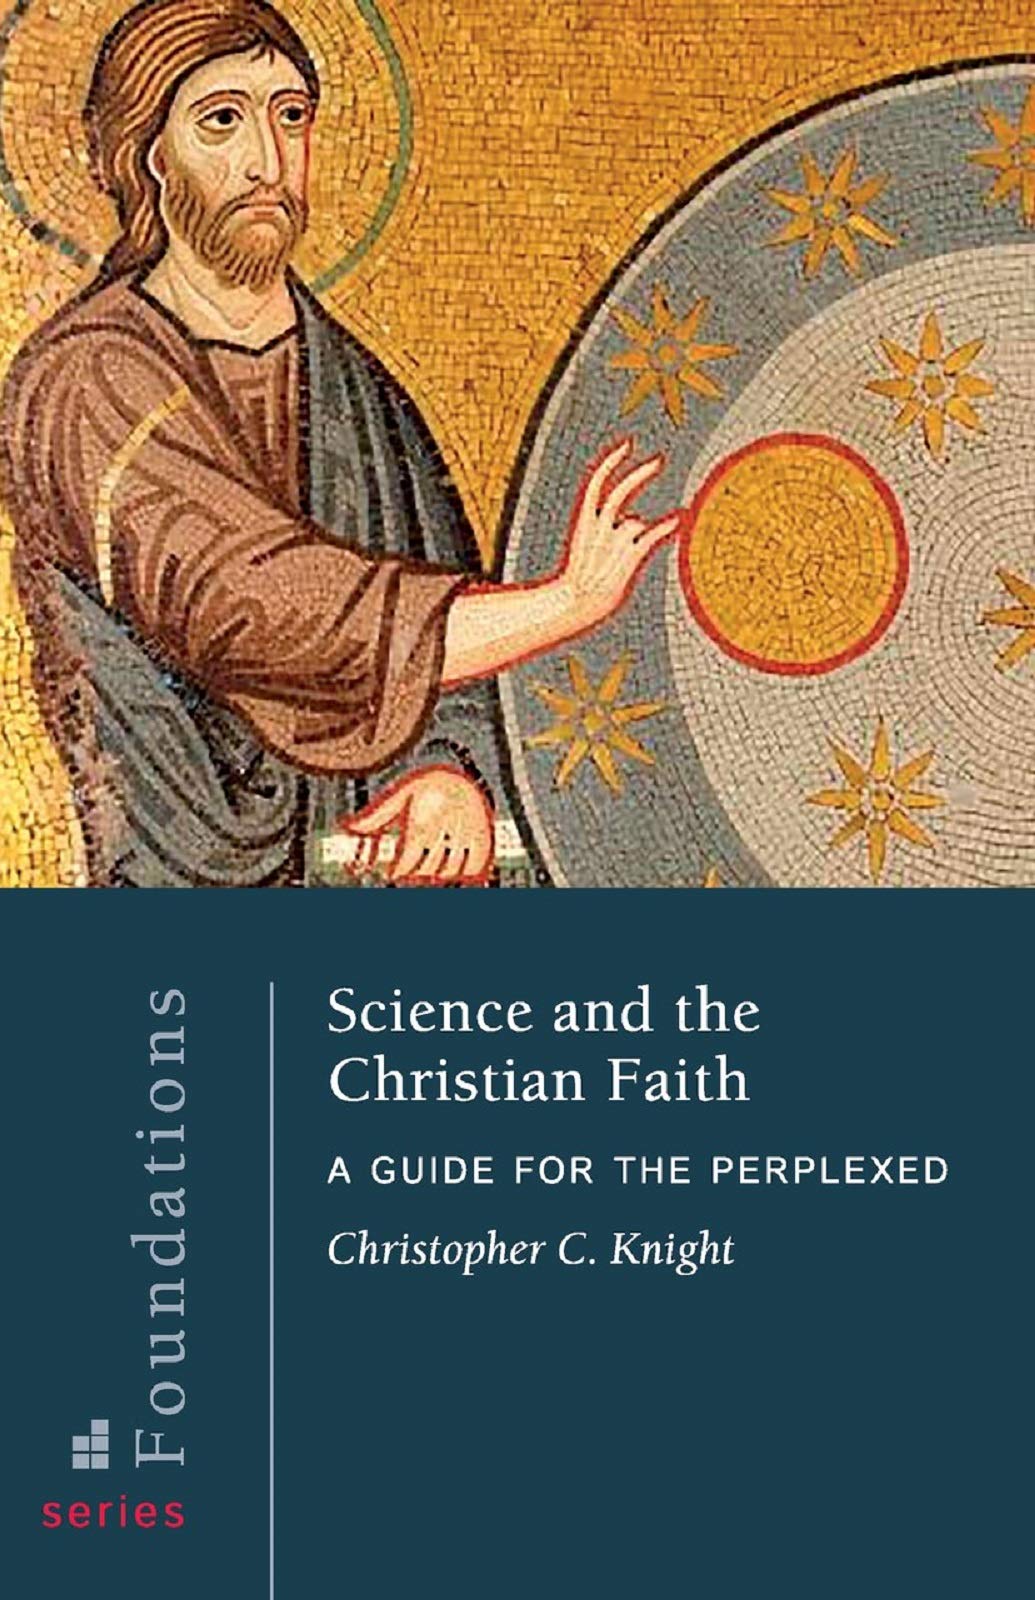 Science and the Christian Faith